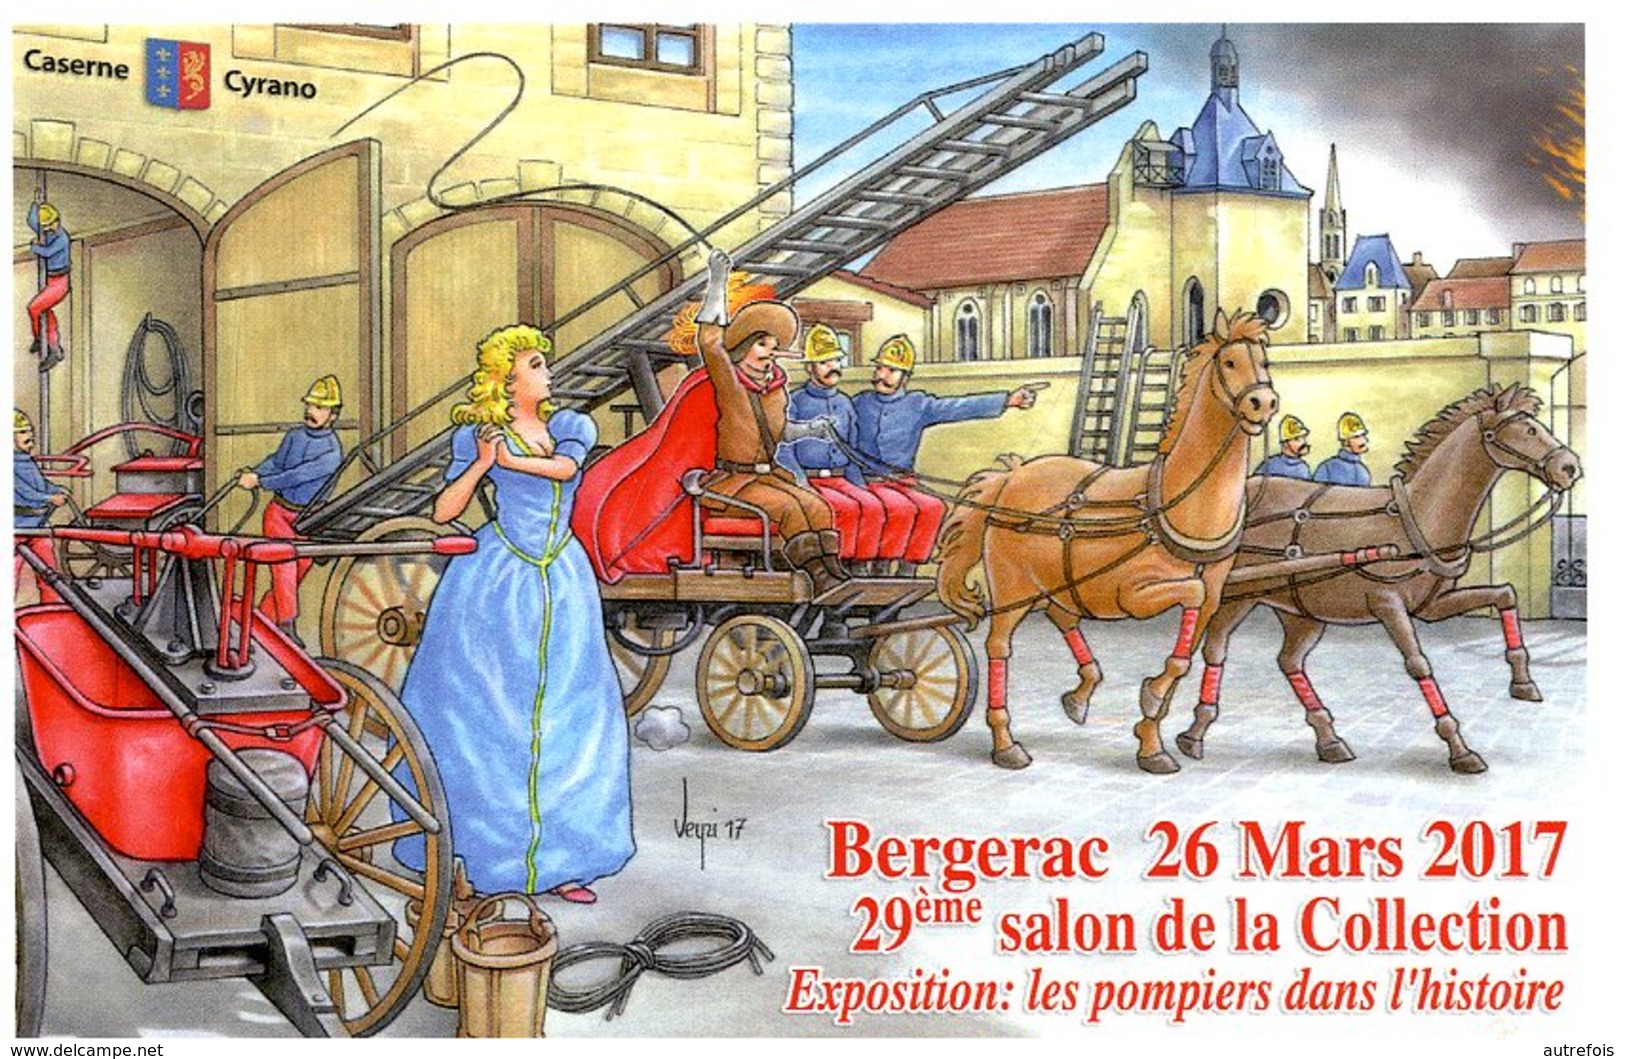 VEYRI  -  BERGERAC  -  29éme SALON DE LA COLLECTION   2015  LES POMPIERS DANS L HISTOIRE - Veyri, Bernard